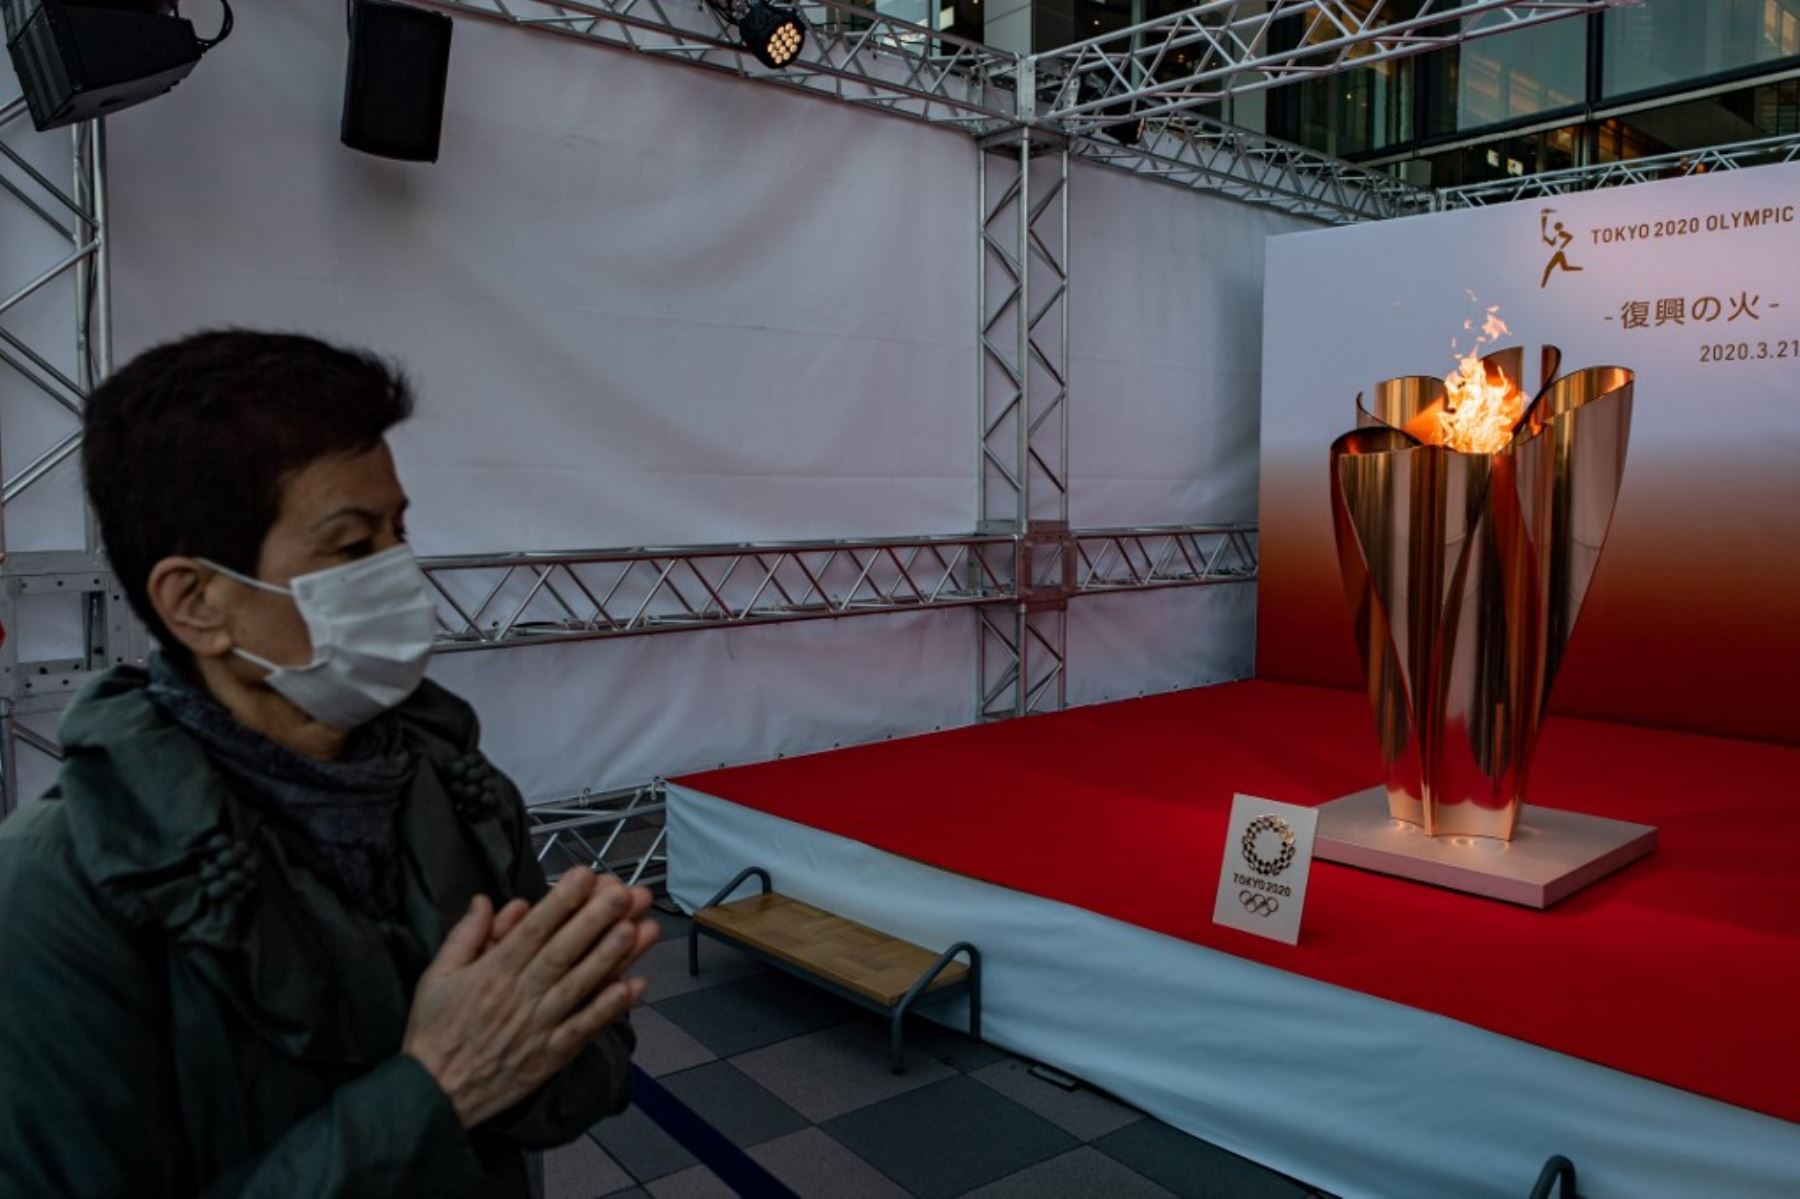 Decenas de miles de personas acudieron al sitio donde se encuentra el pebetero con la llama olímpica en el noreste de Japón durante el fin de semana, a pesar de las preocupaciones sobre la pandemia de coronavirus.